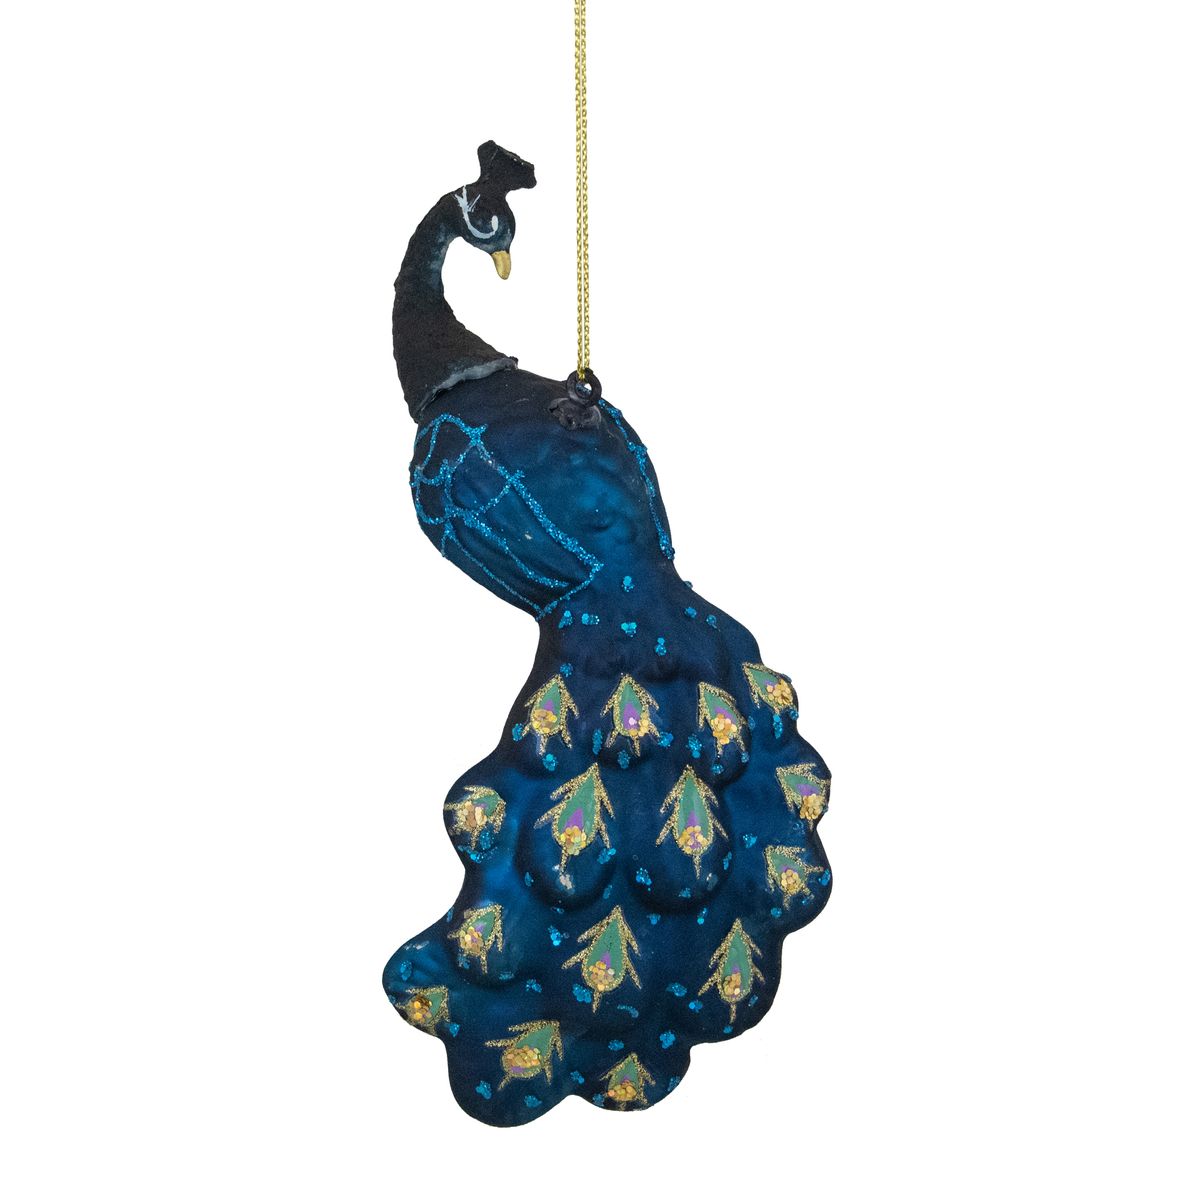 [送料無料] Northlight ターコイズブルーガラスクリスマス装飾アクセントオーナメント、6.25 "。 [楽天海外通販] | Northlight Turquoise Blue Glass Christmas Decorative Accent Ornament, 6.25"